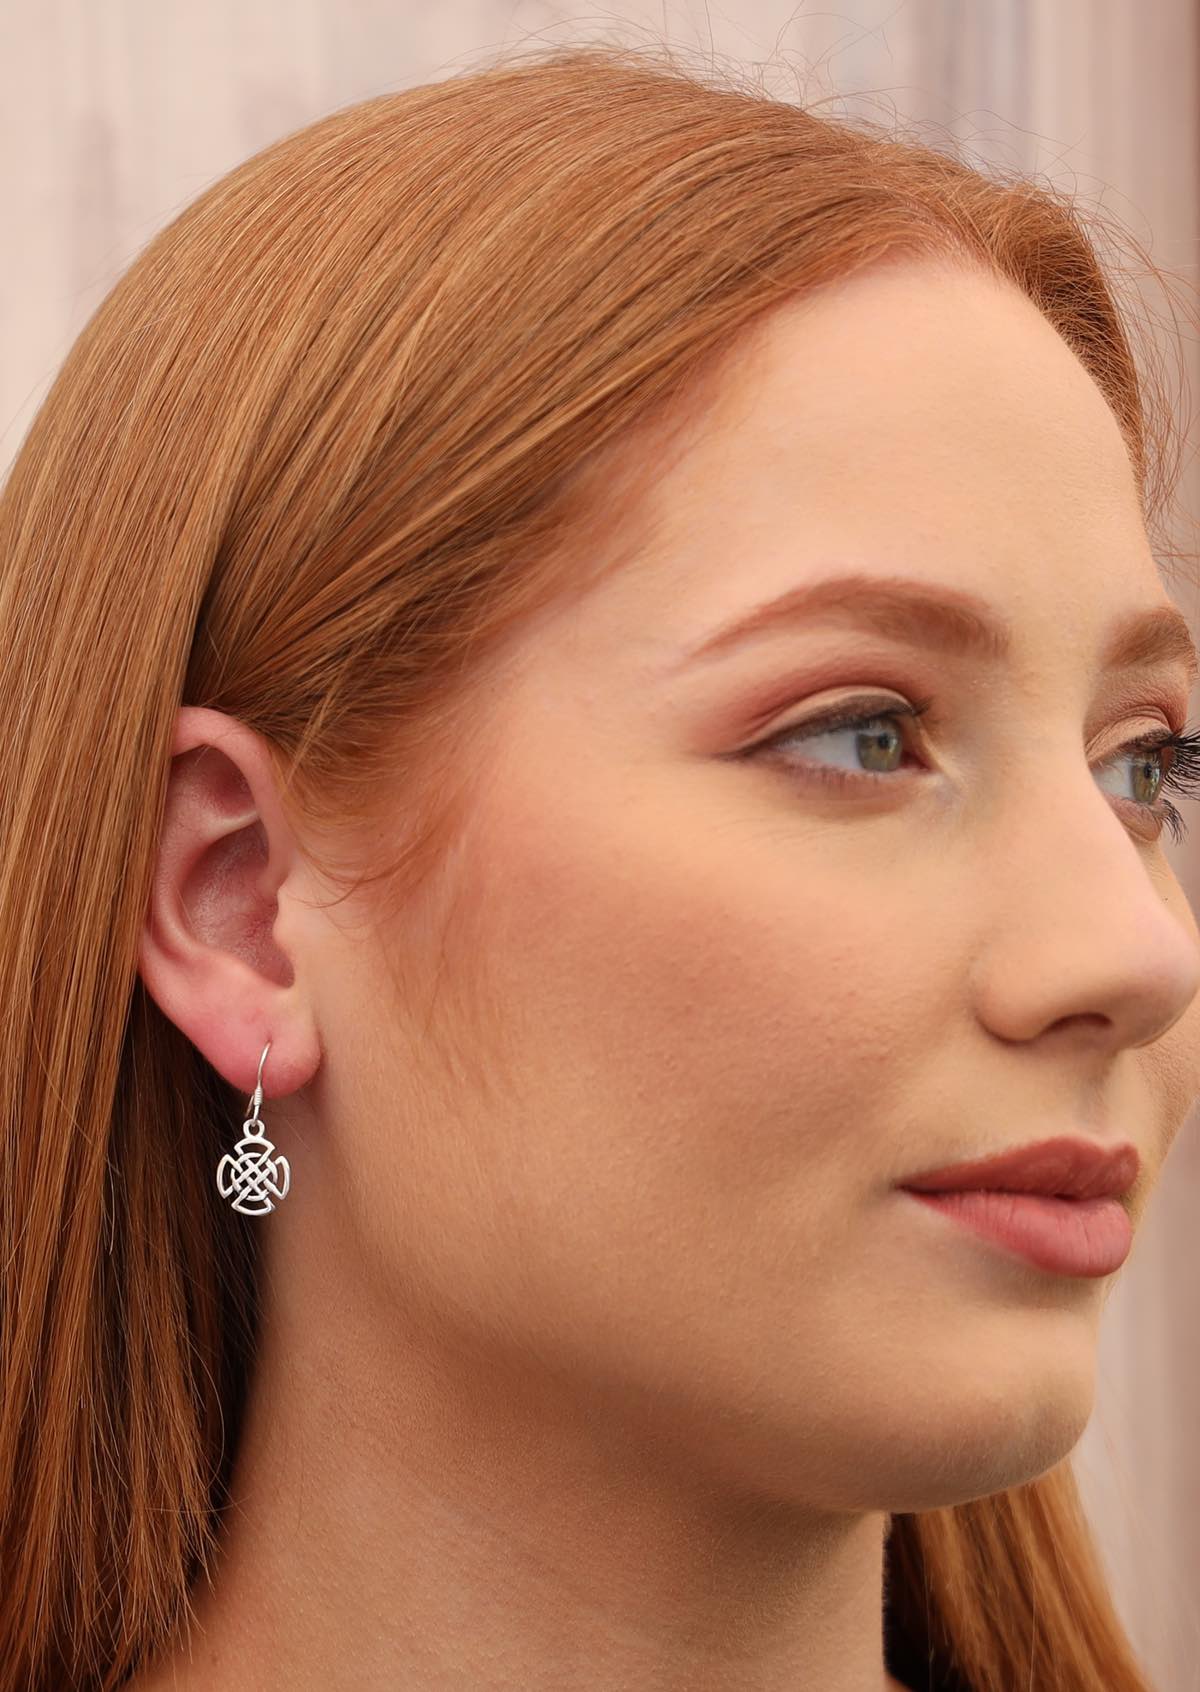 Model wears sterling silver celtic woven knot earring on hook